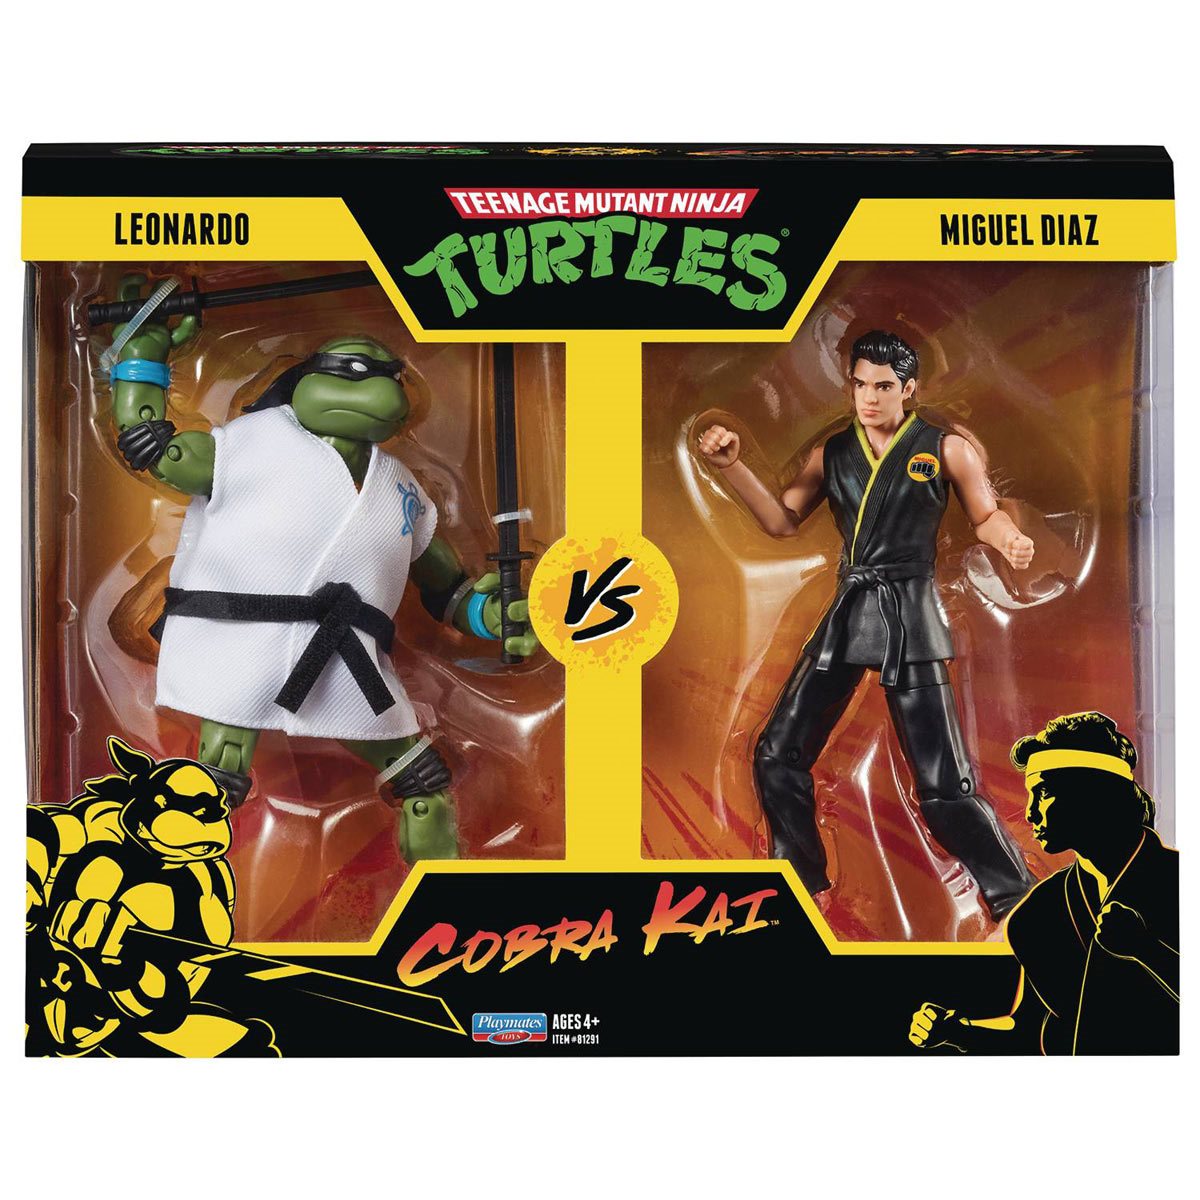 Teenage Mutant Ninja Turtles - Cobra Kai Leonardo vs. Miguel Diaz